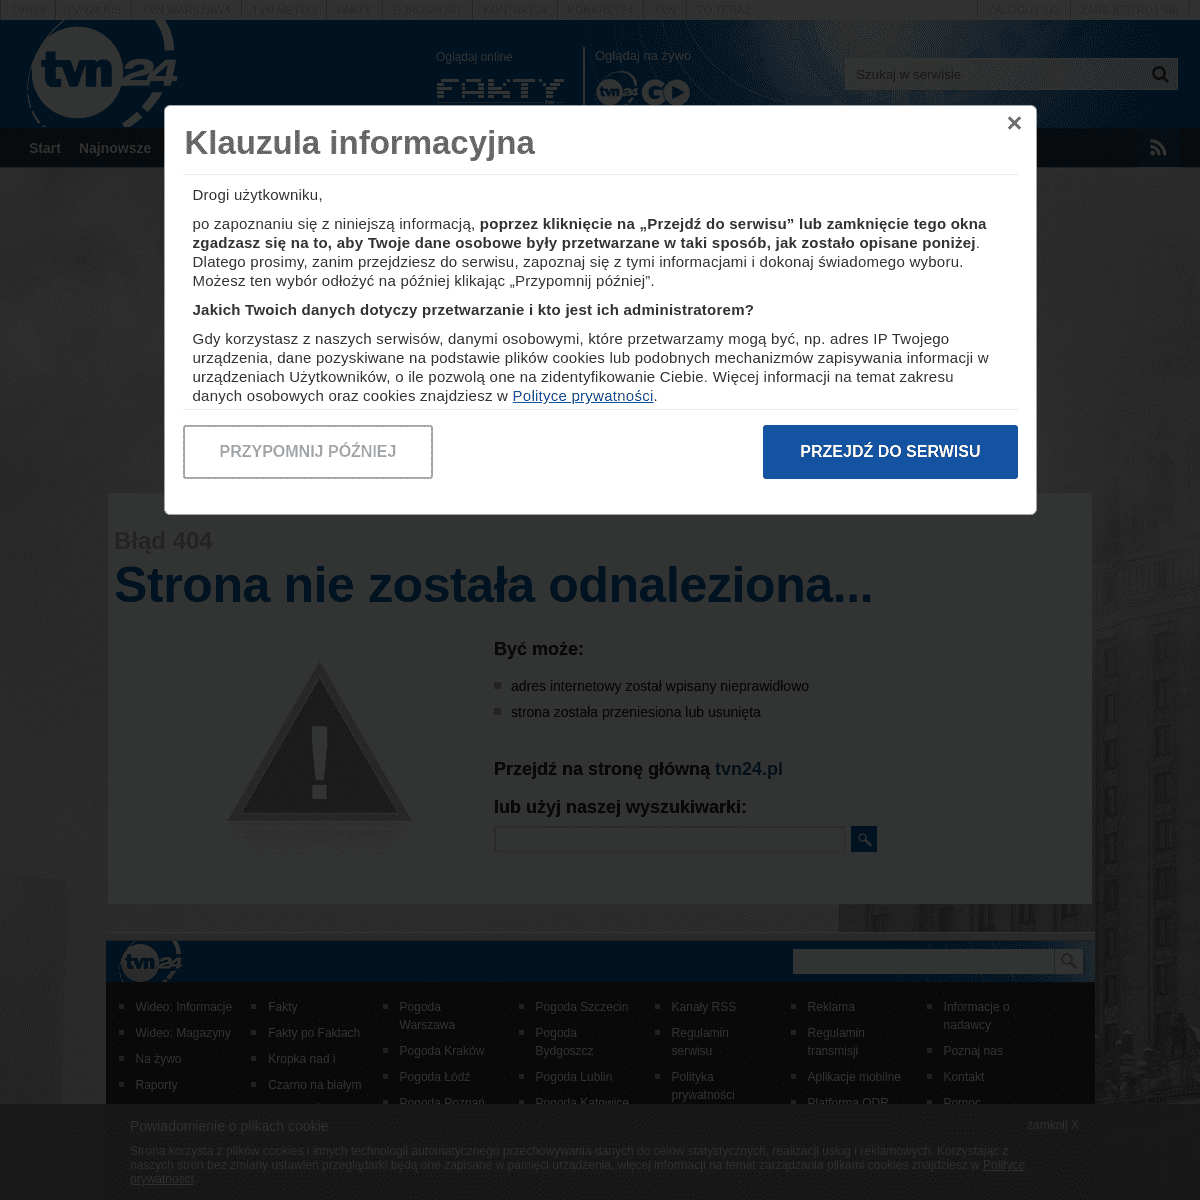 A complete backup of eurosport.tvn24.pl/pilka-nozna